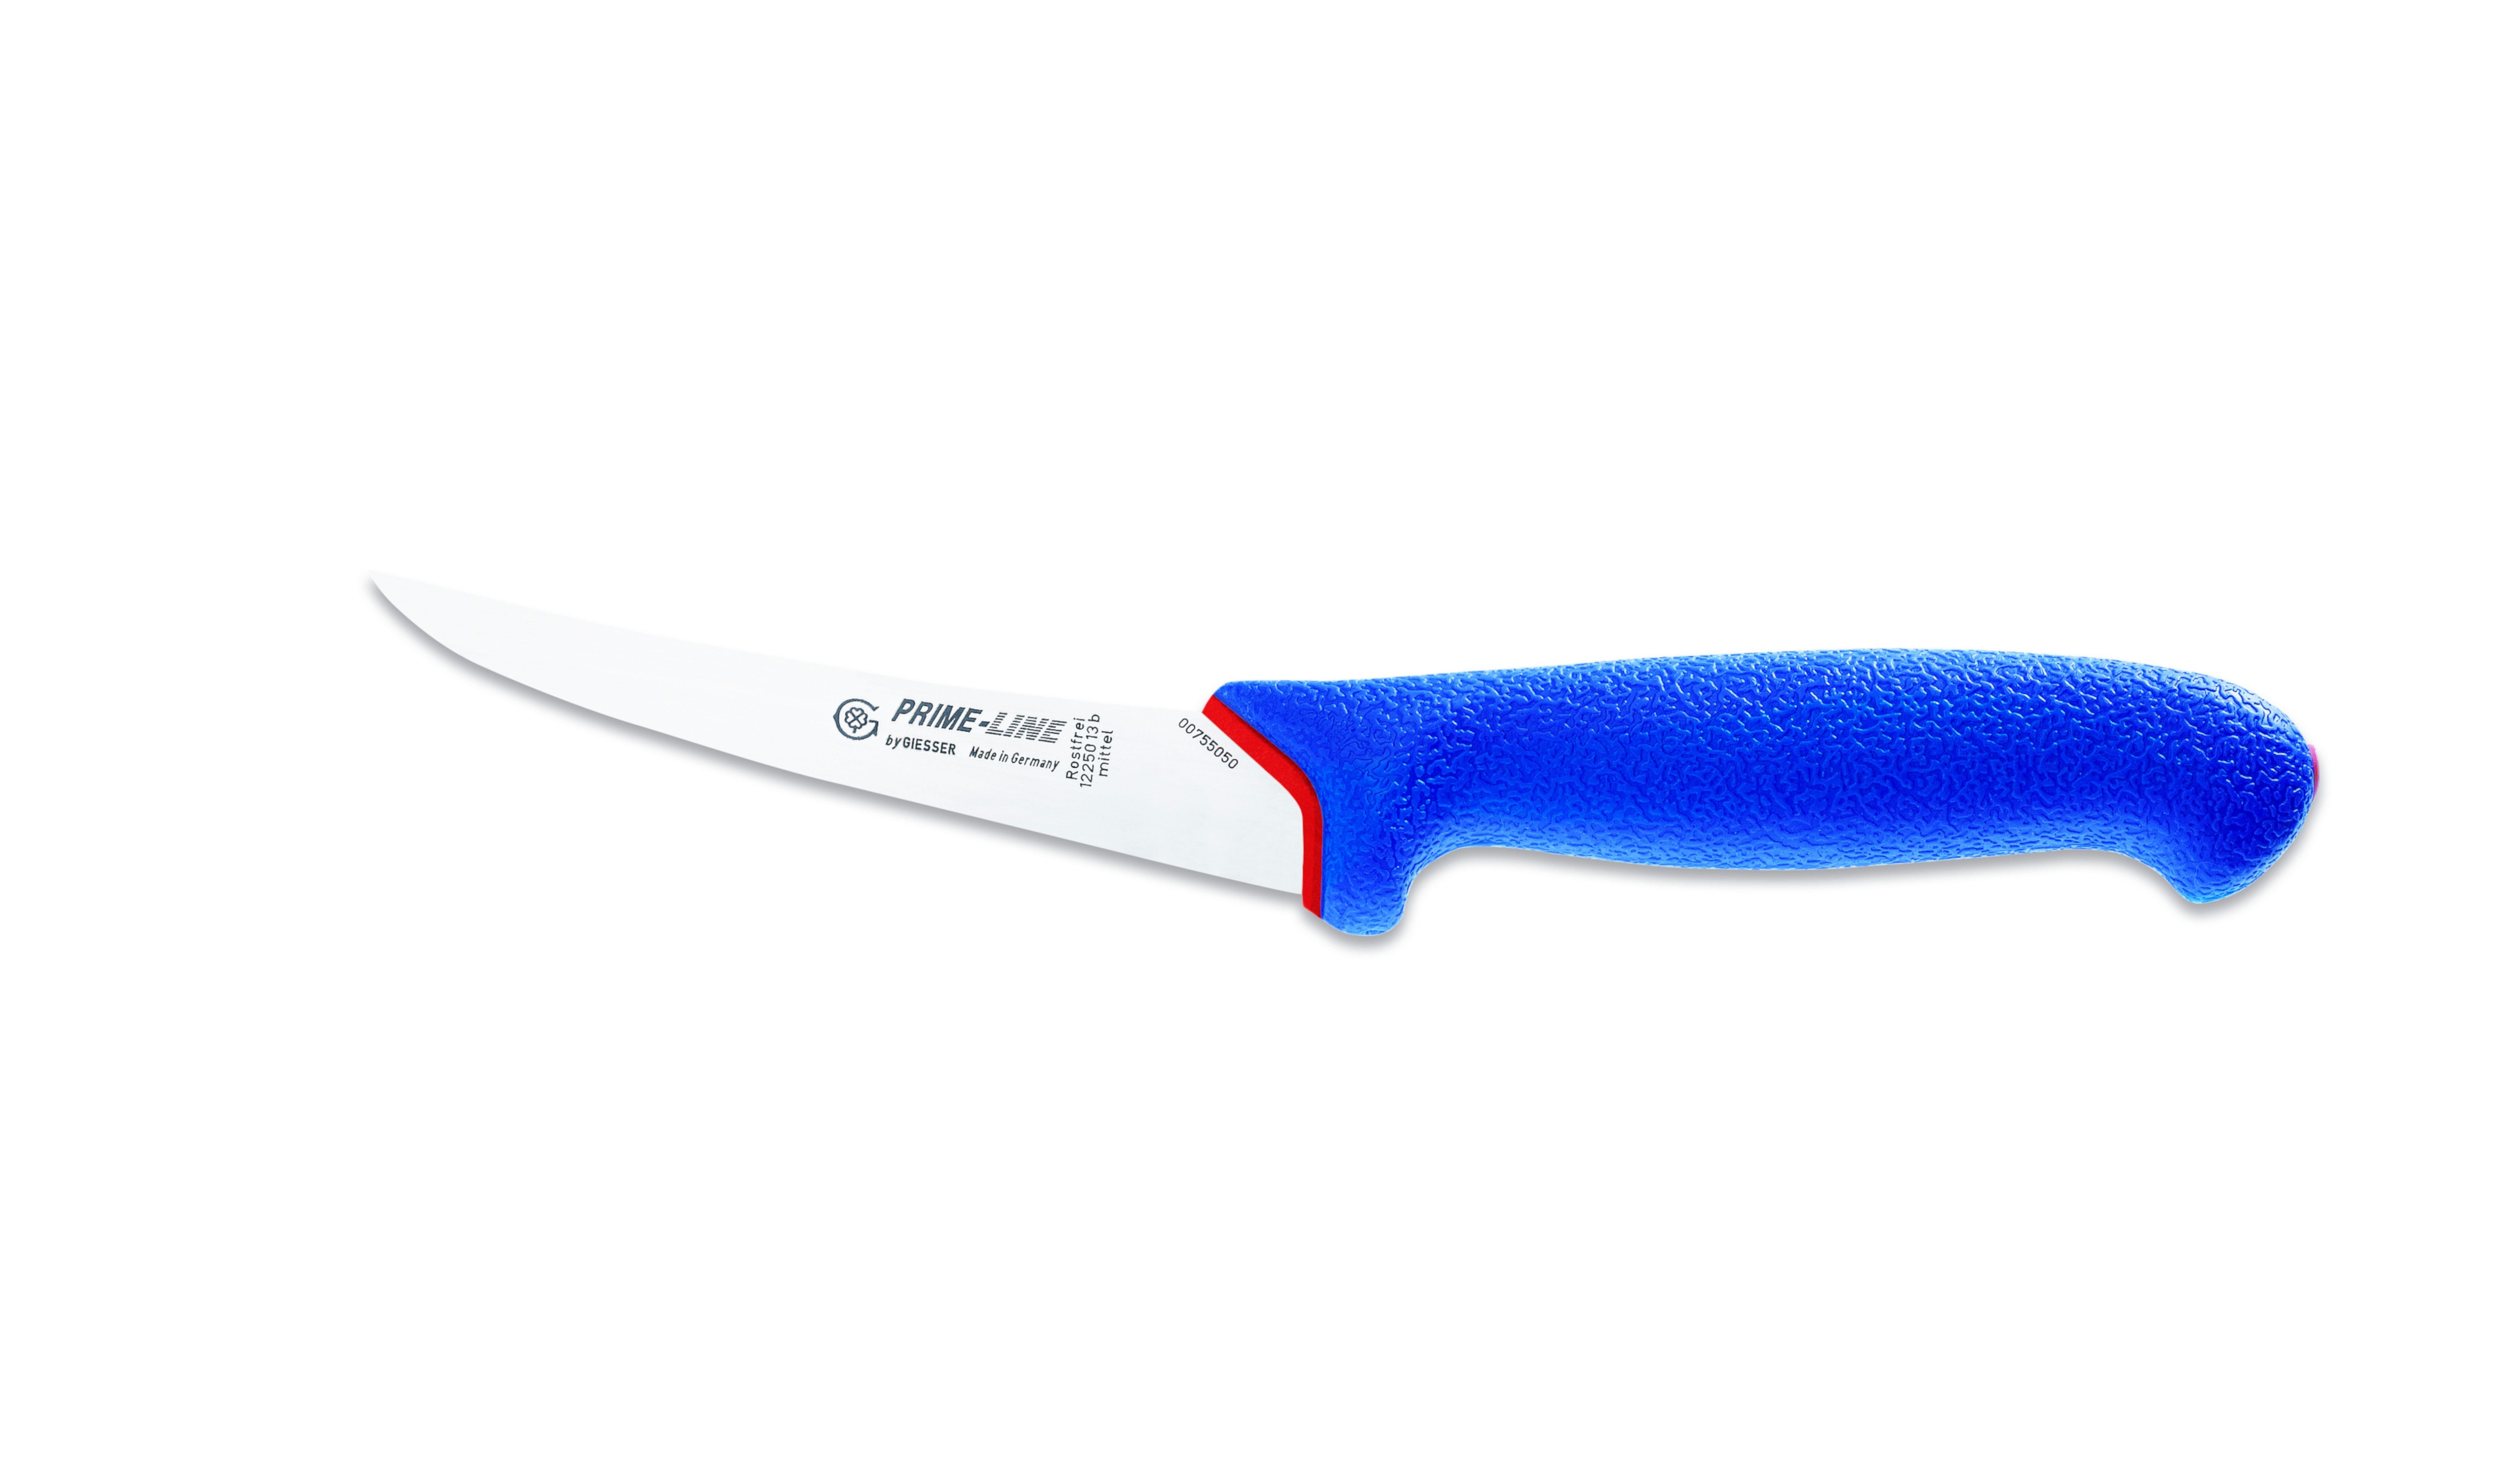 Giesser Messer 13/15, weicher Griff Ausbeinmesser scharf, PrimeLine, blau Fleischermesser rutschfest, 12250